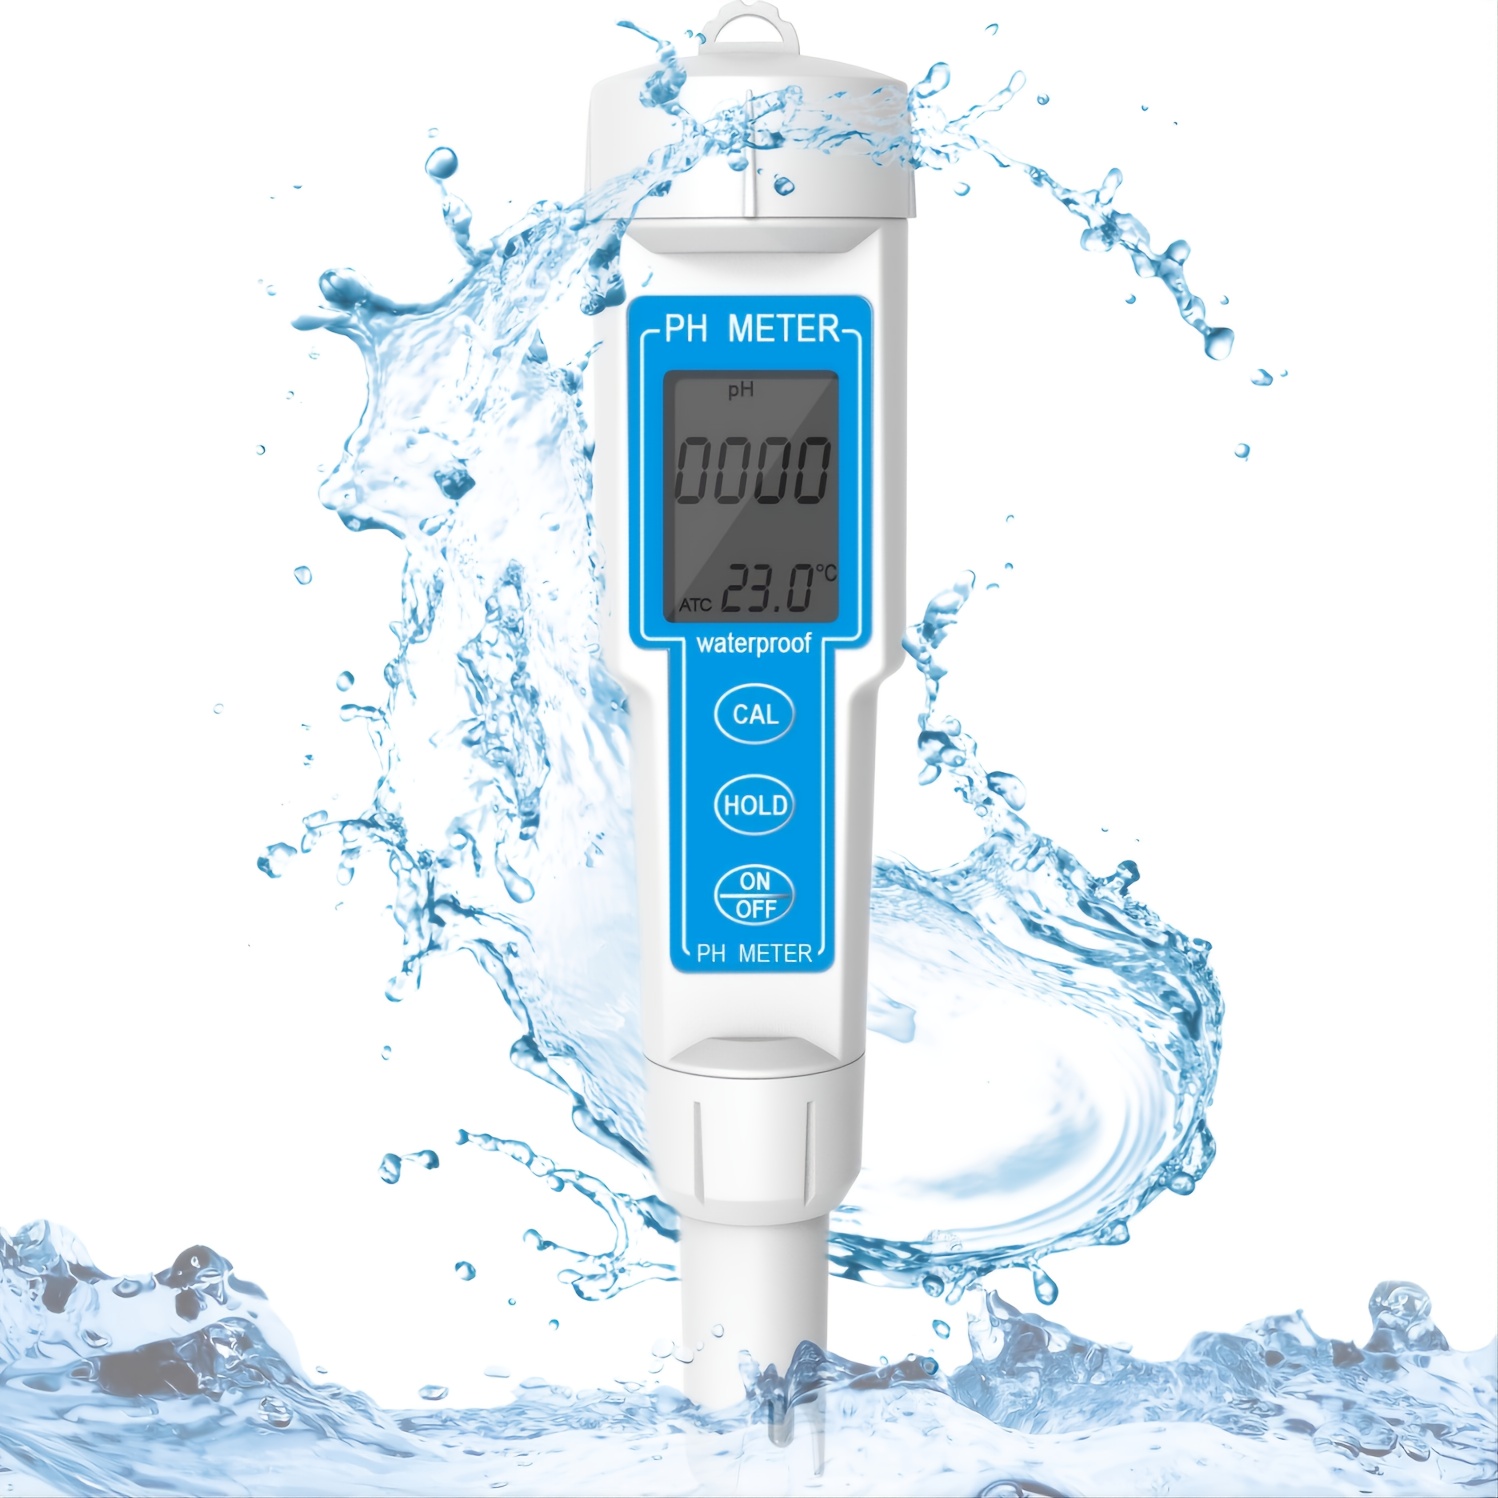 Medidor de PH digital para agua, 0.01 PH Probador de PH tipo bolígrafo de  alta precisión para agua potable doméstica, acuarios, piscinas, rango de PH  0-14